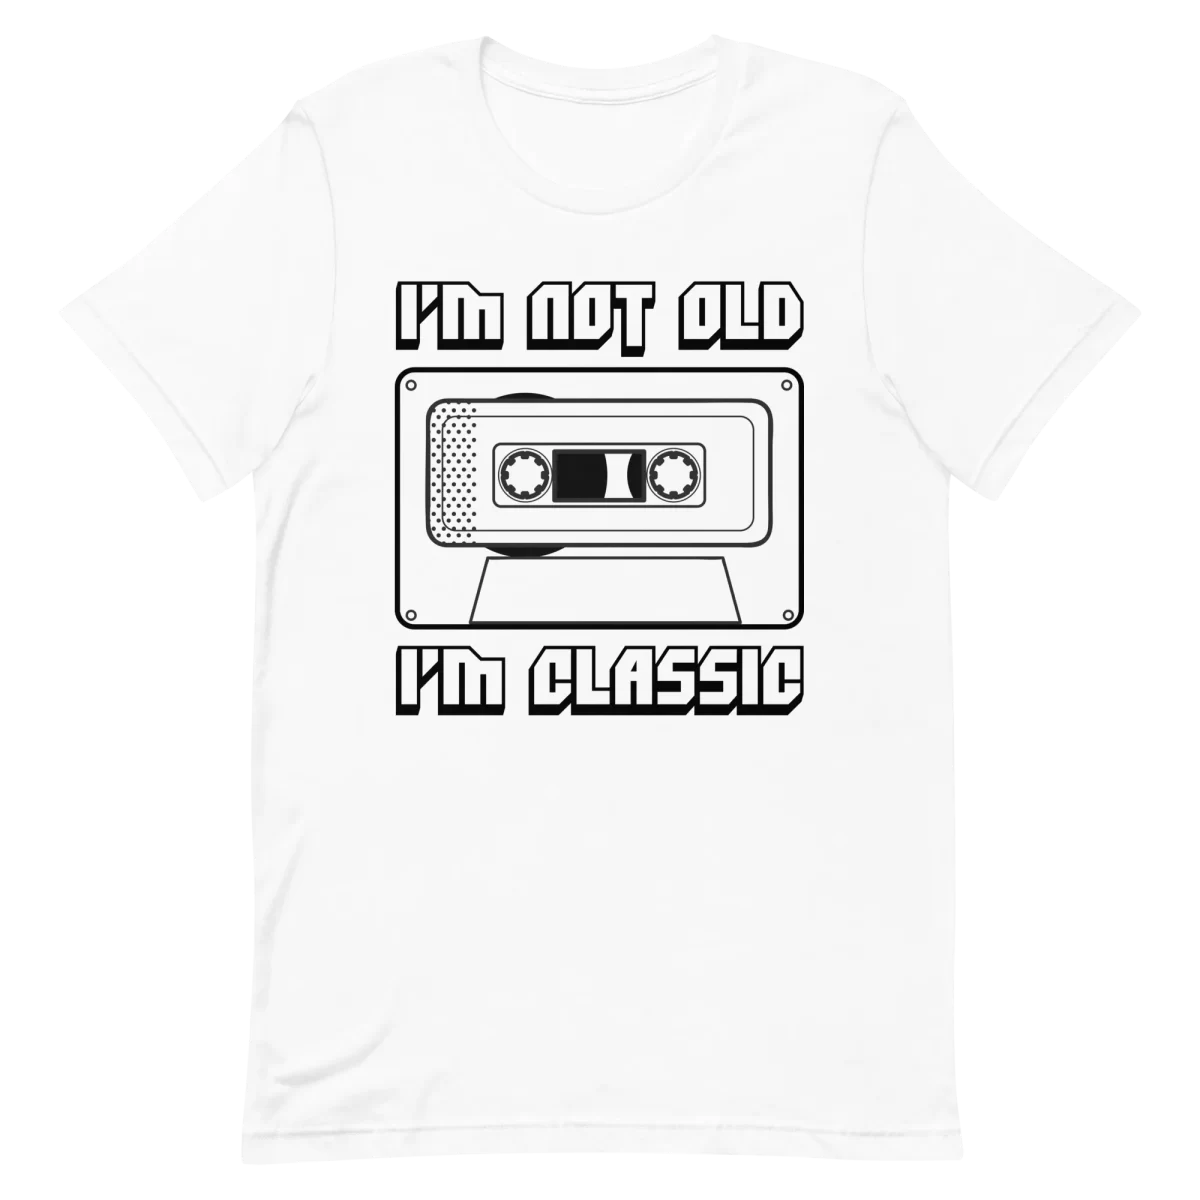 Unisex T-Shirt - I'm Not Old I'm Classic - White